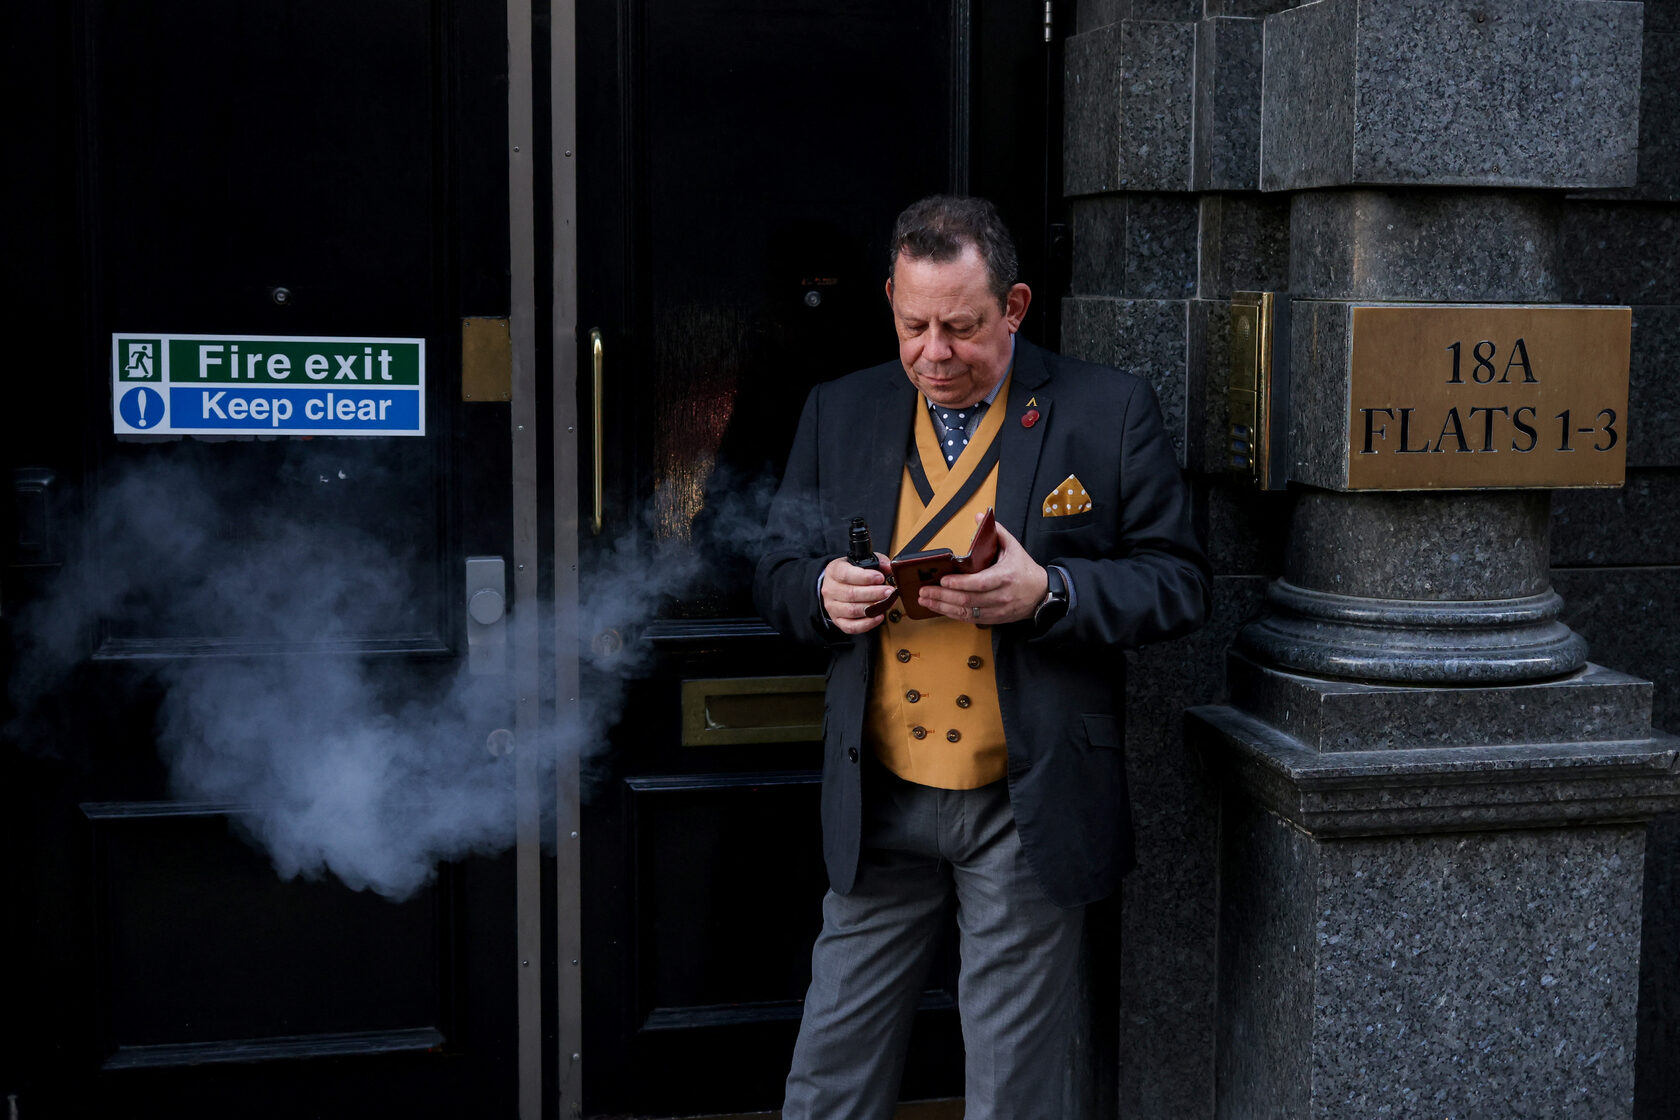 A man smokes an e-cigarette in a fire escape doorway